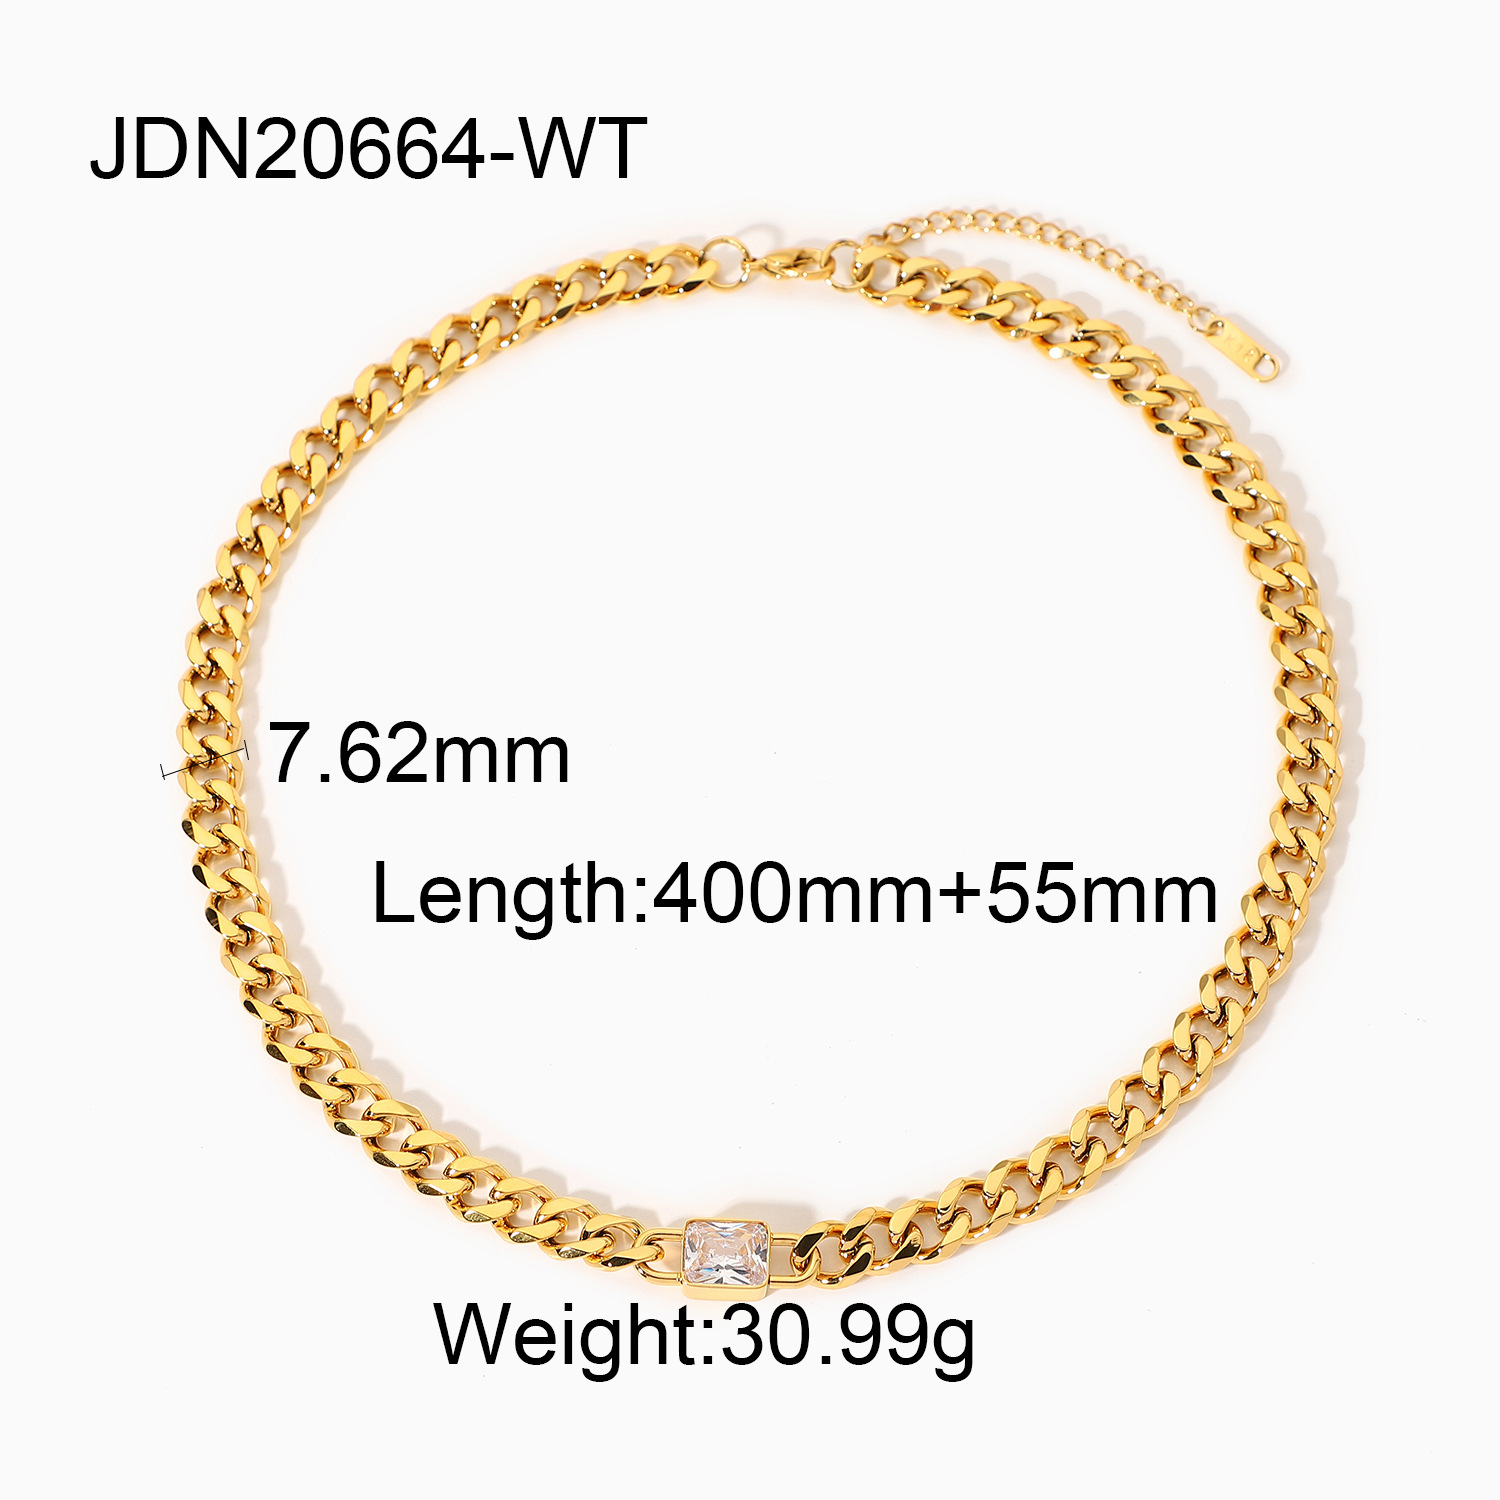 JDN20664-WT